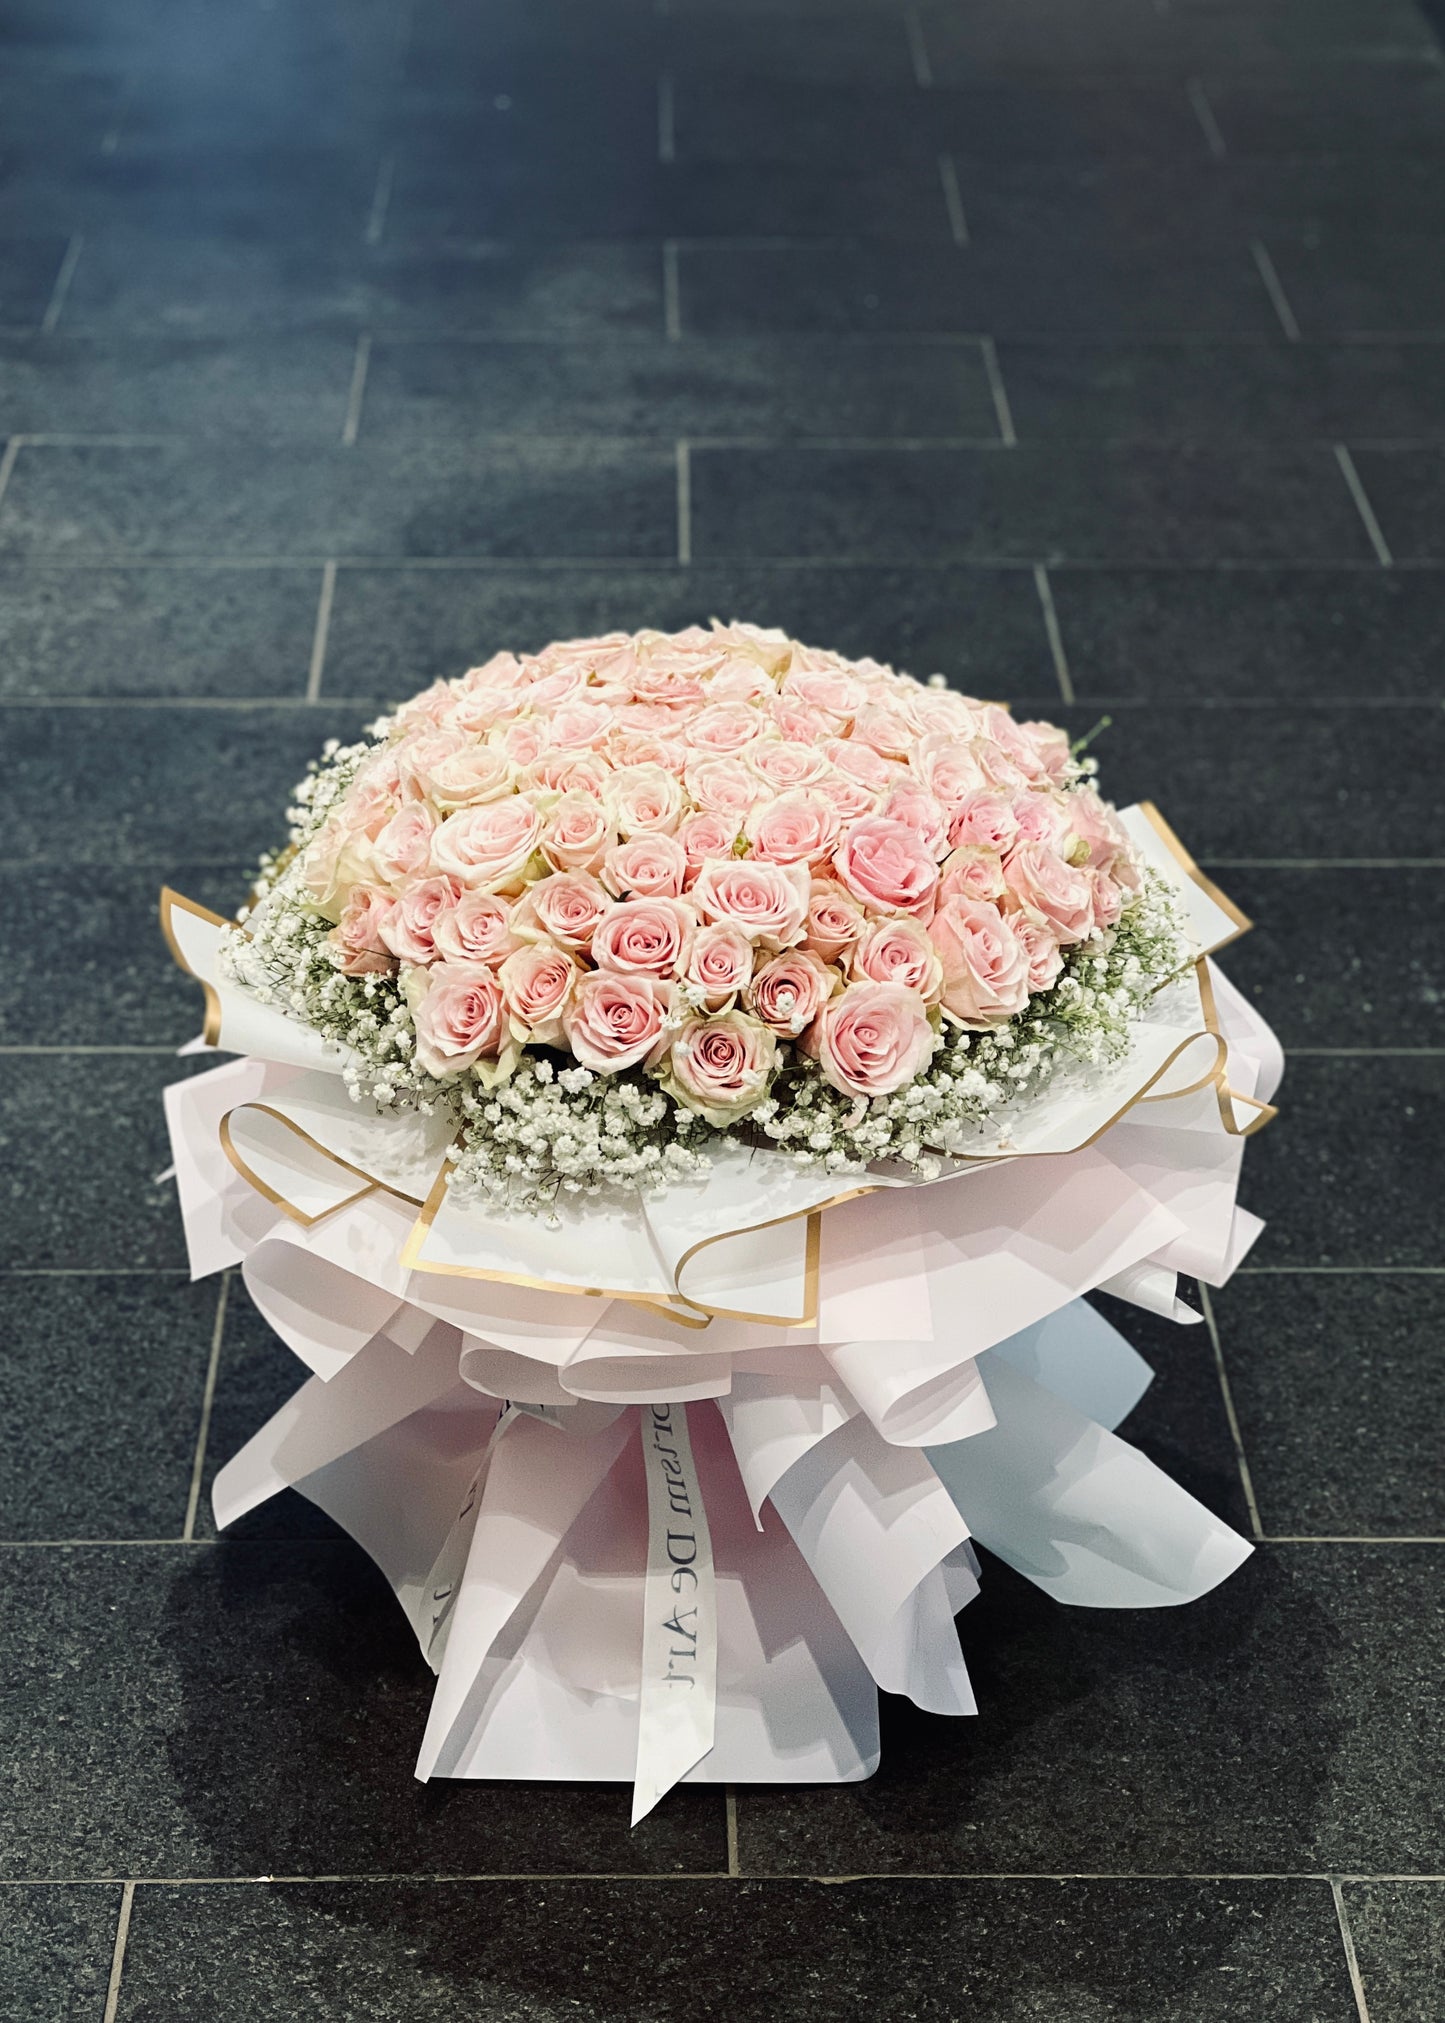 My Forever Romance 100 Stalks Roses | Giant Flower Bouquet